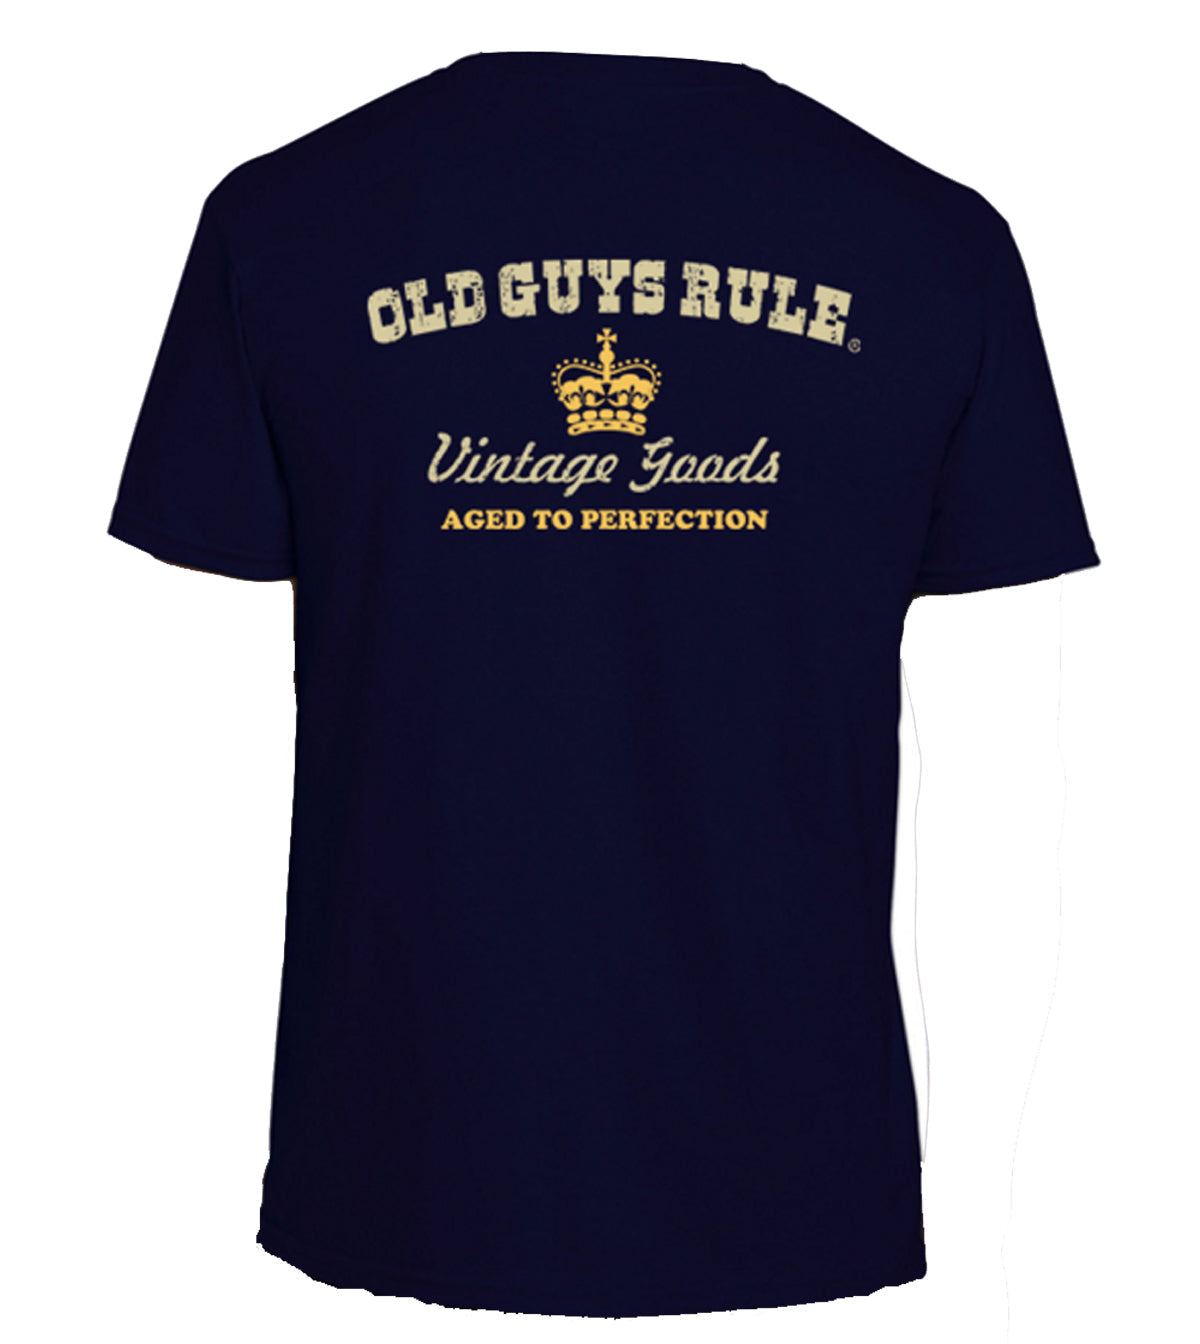 Vintage Label Tee Navy Mens Tshirt by Old Guys Rule OGR | The Bloke Shop